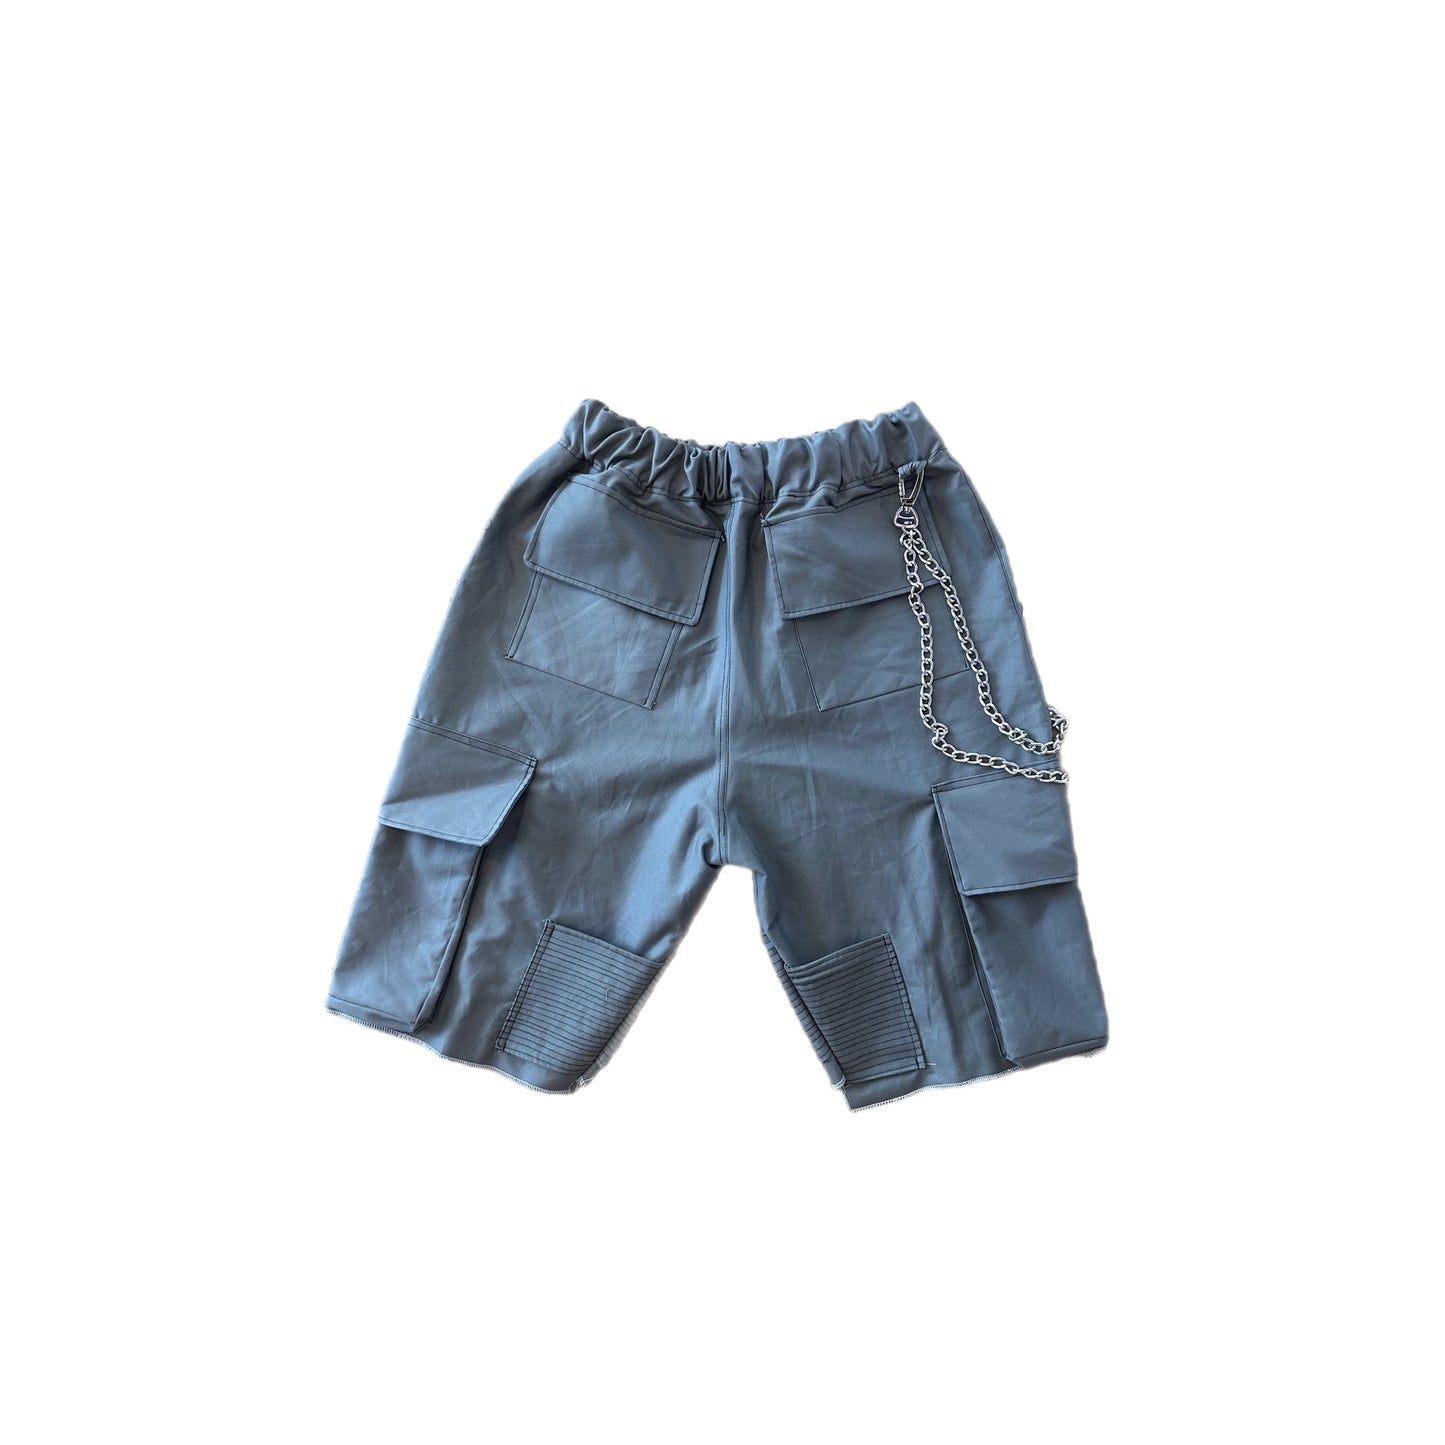 Hikestar shorts